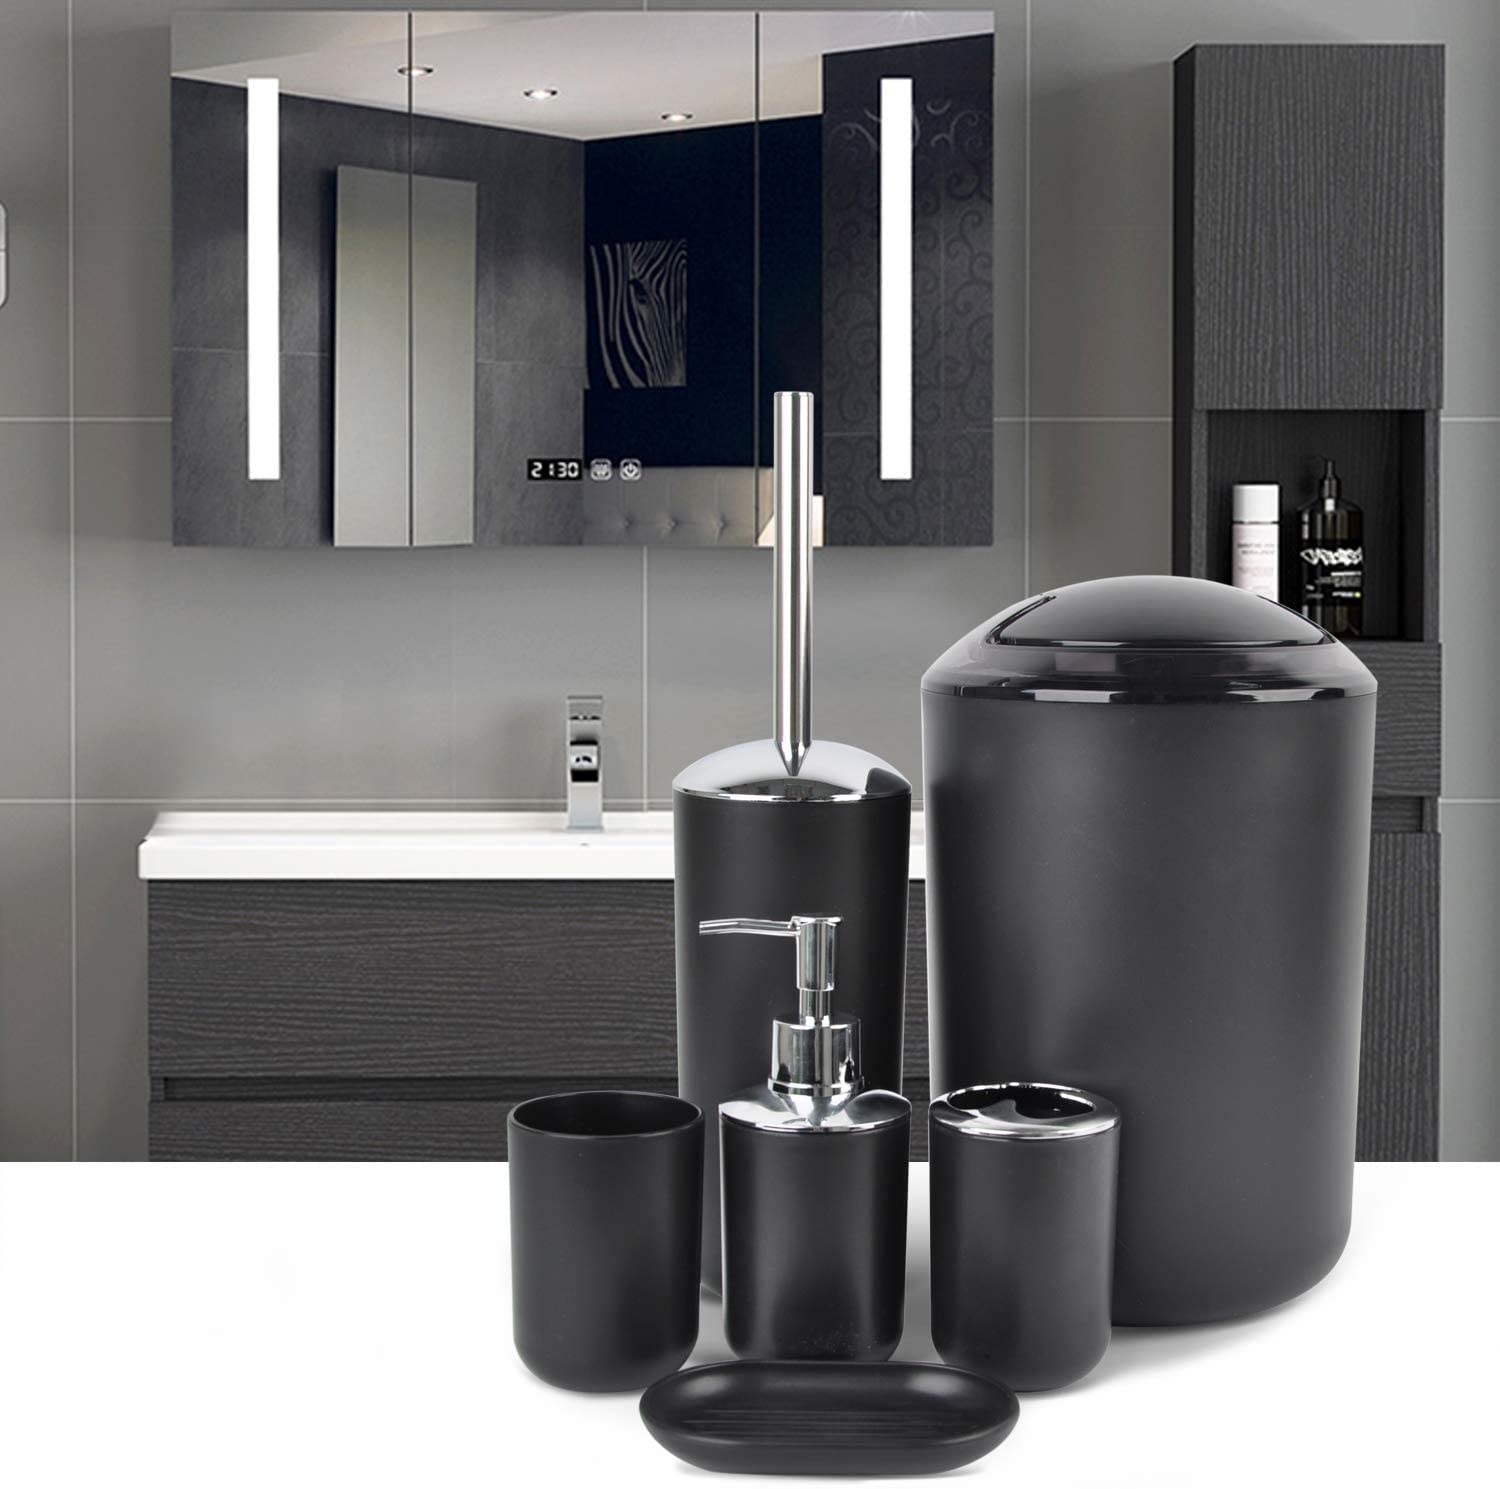 Set de accesorios para baño en color negro mate